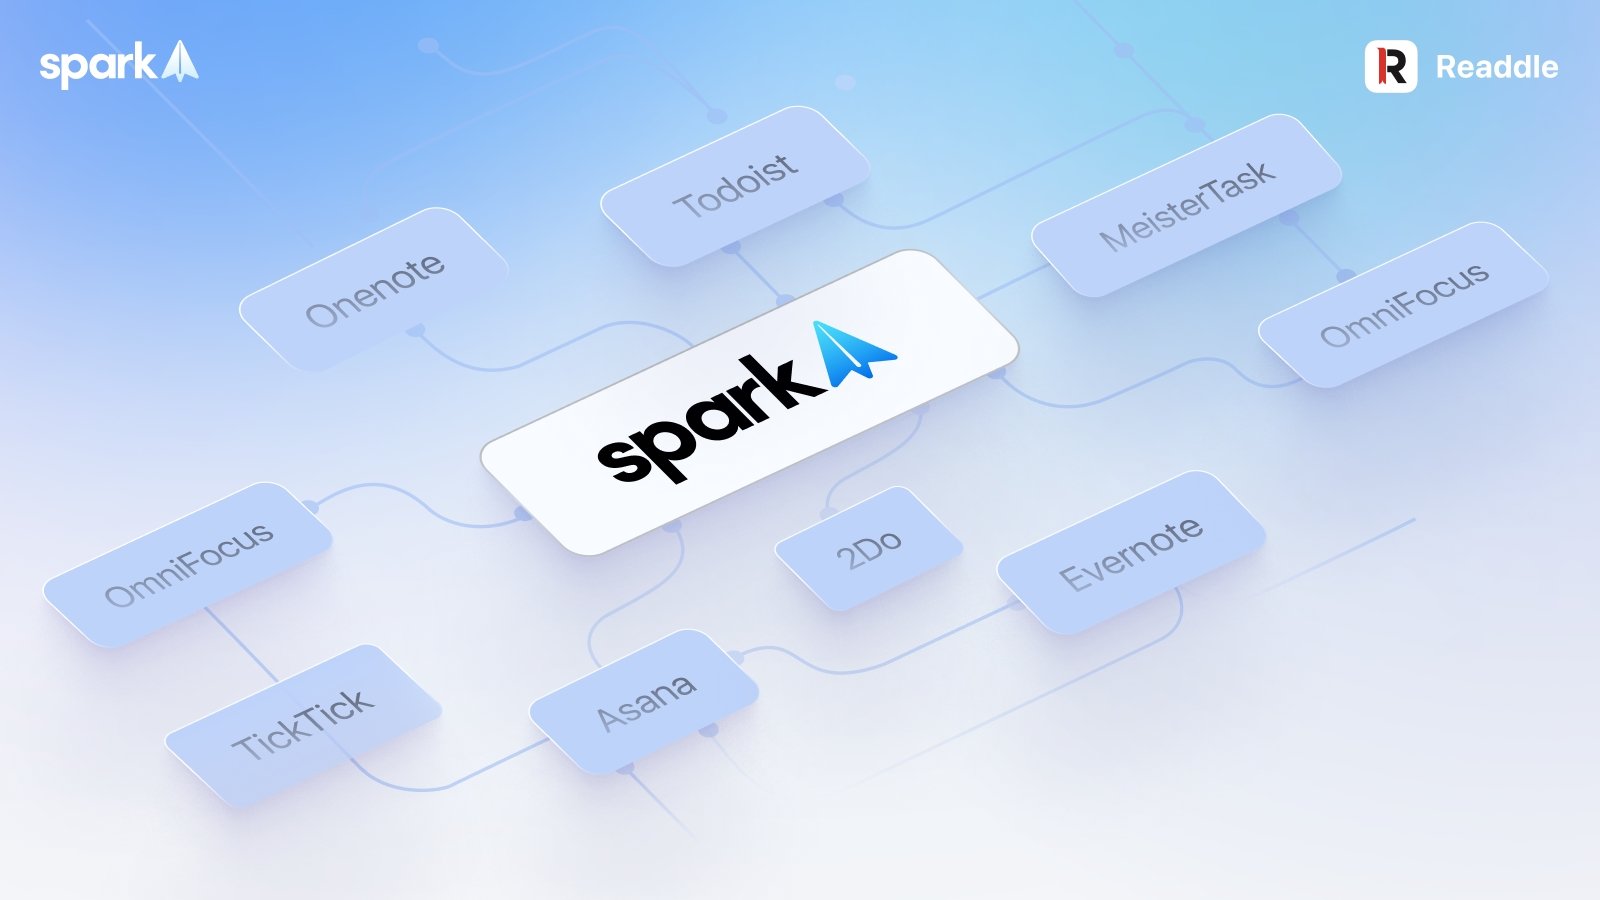 Spark recebe novo sistema de integrações com apps de terceiros